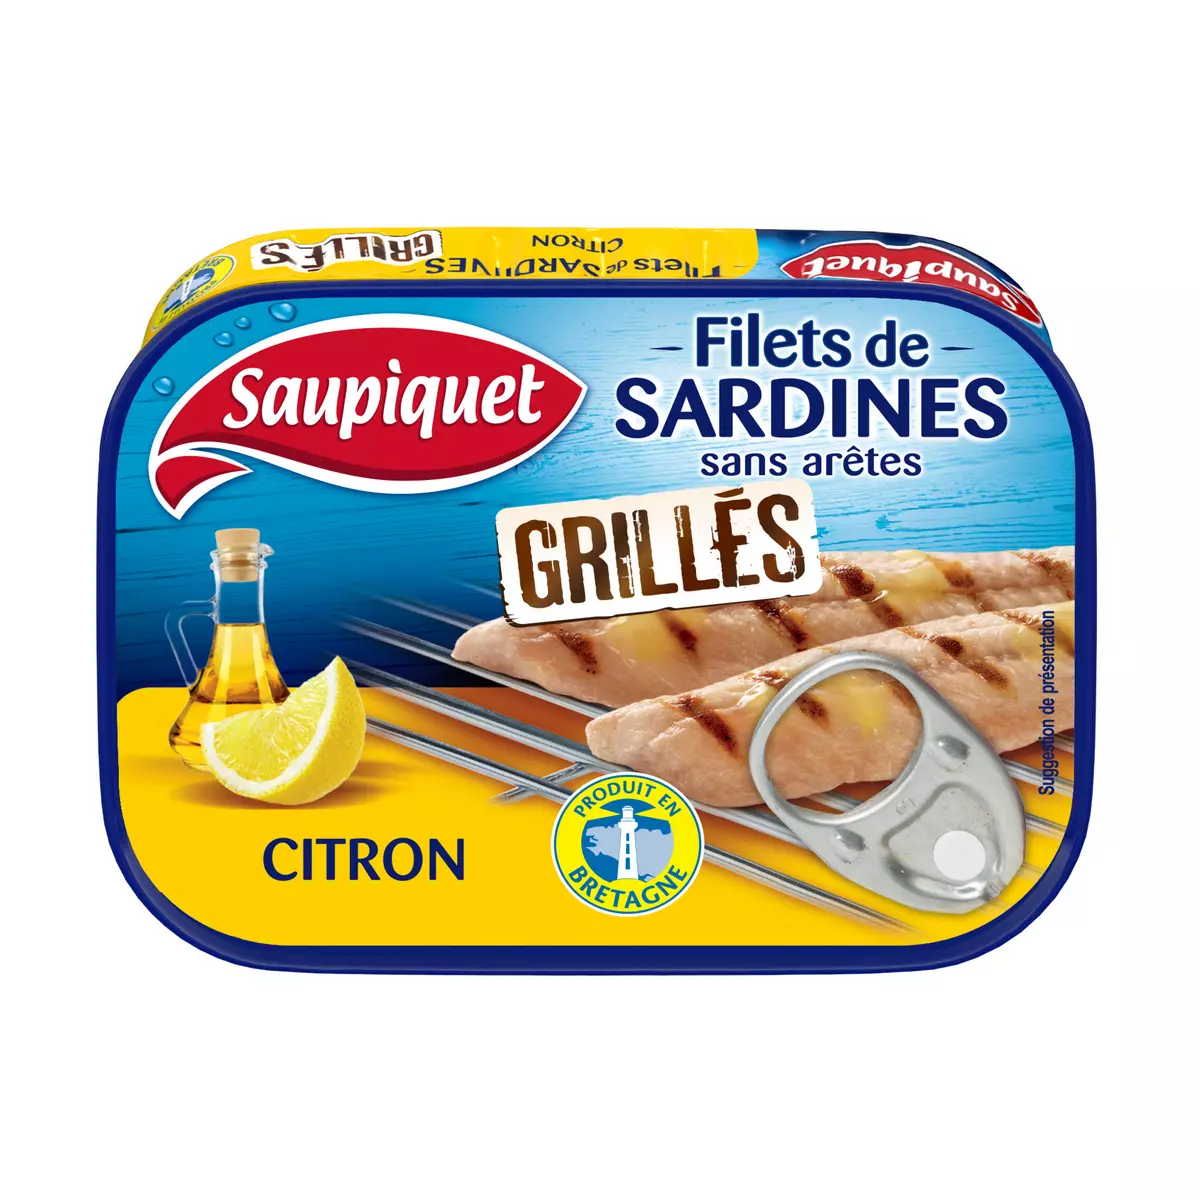 SAUPIQUET Filets de sardines grillés au citron produit en Bretagne 70g